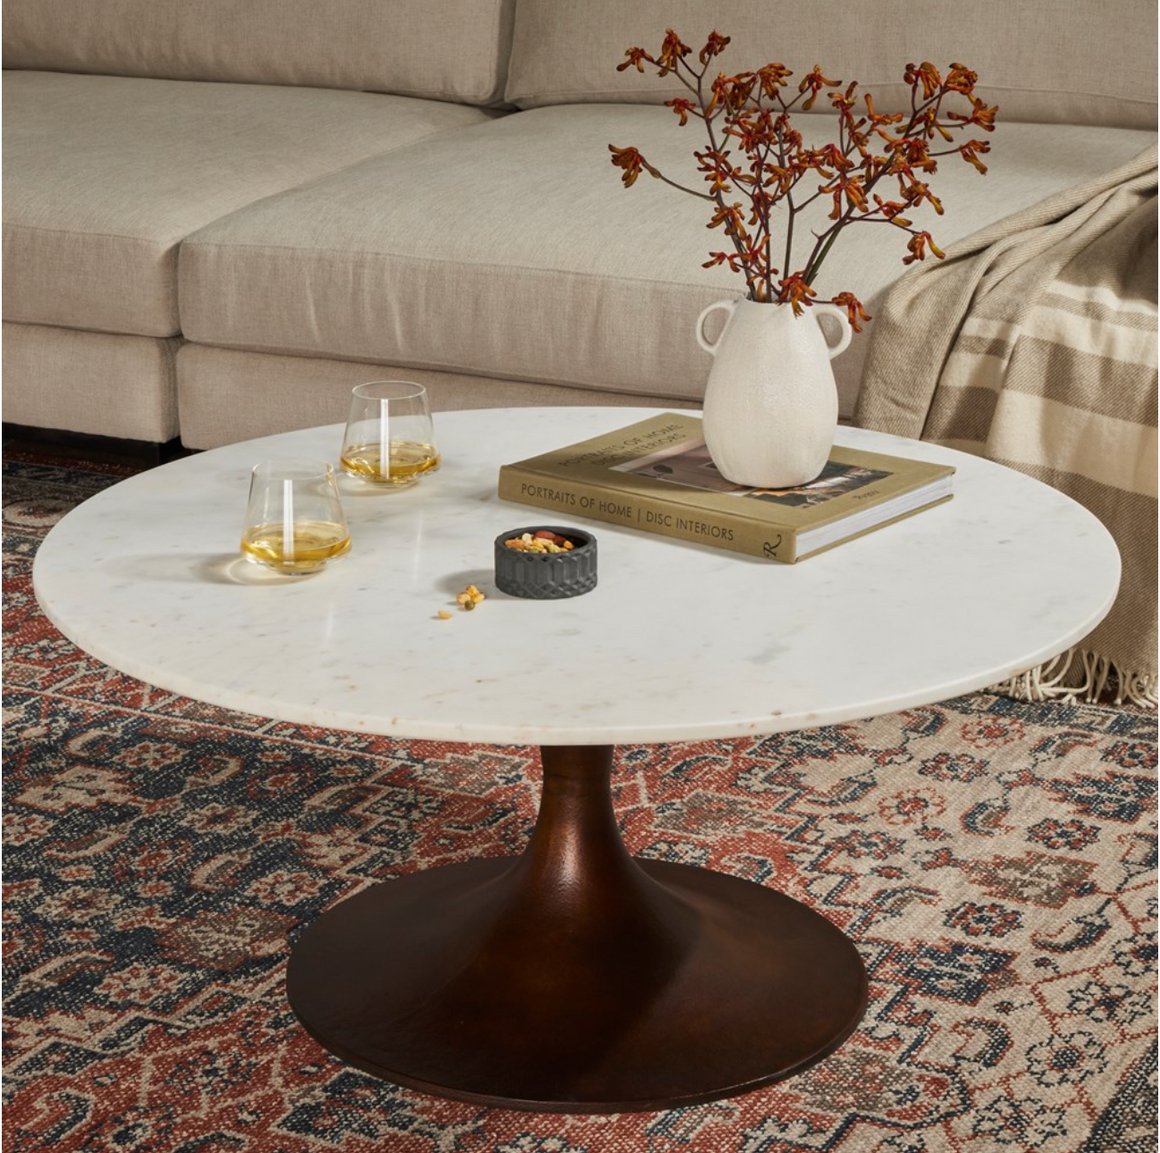 Simeon Round Coffee Table - Polished White